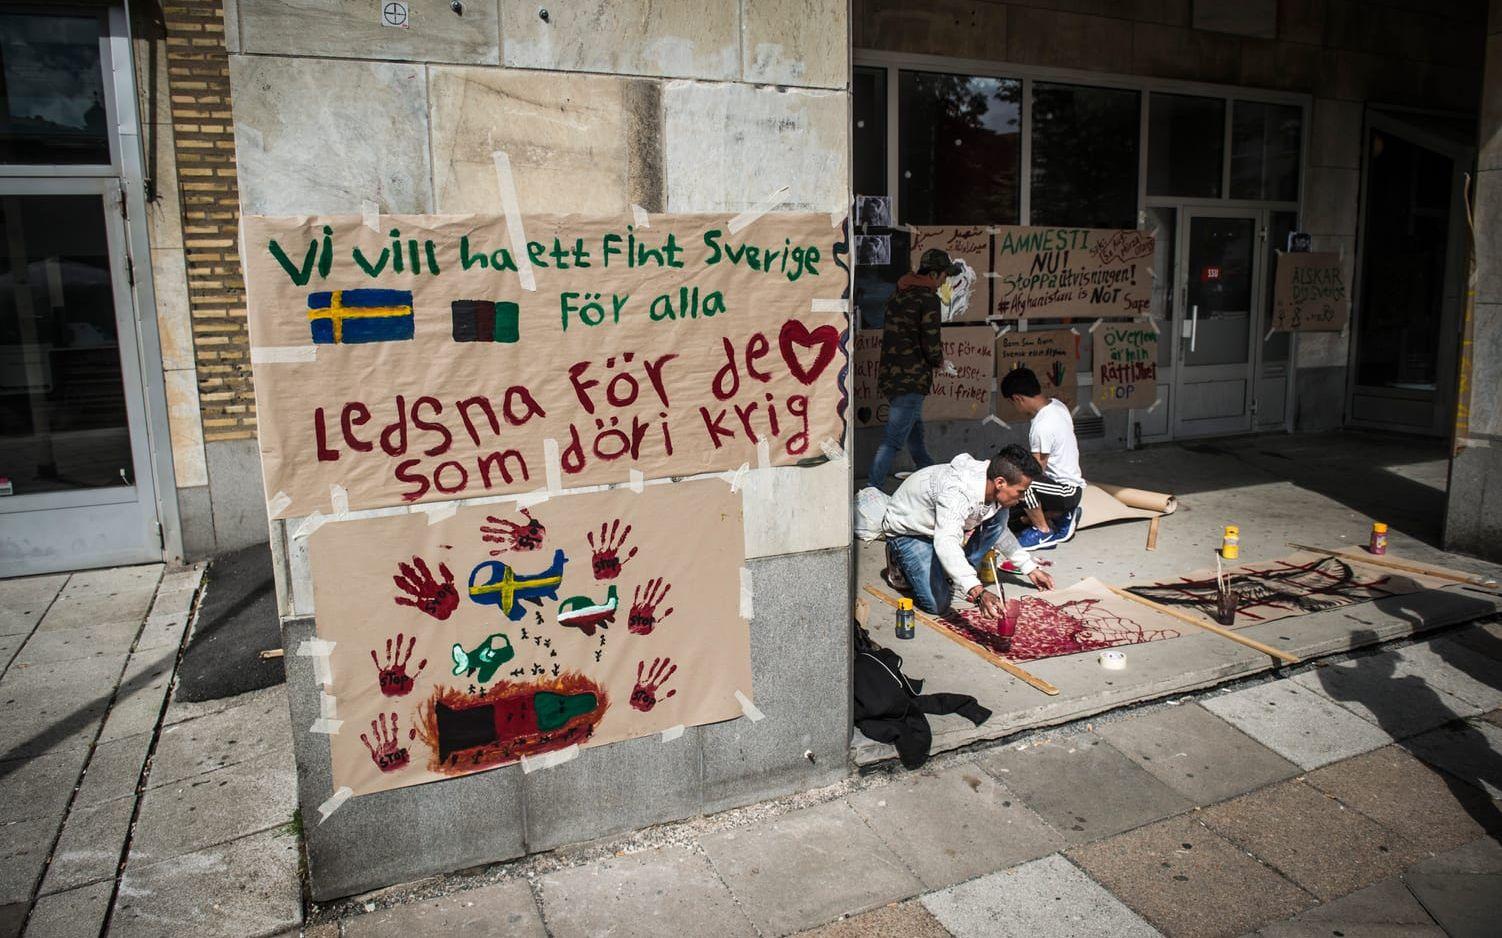 De har varit där för att protestera mot utvisningar till Afghanistan. Bild: Olof Ohlsson